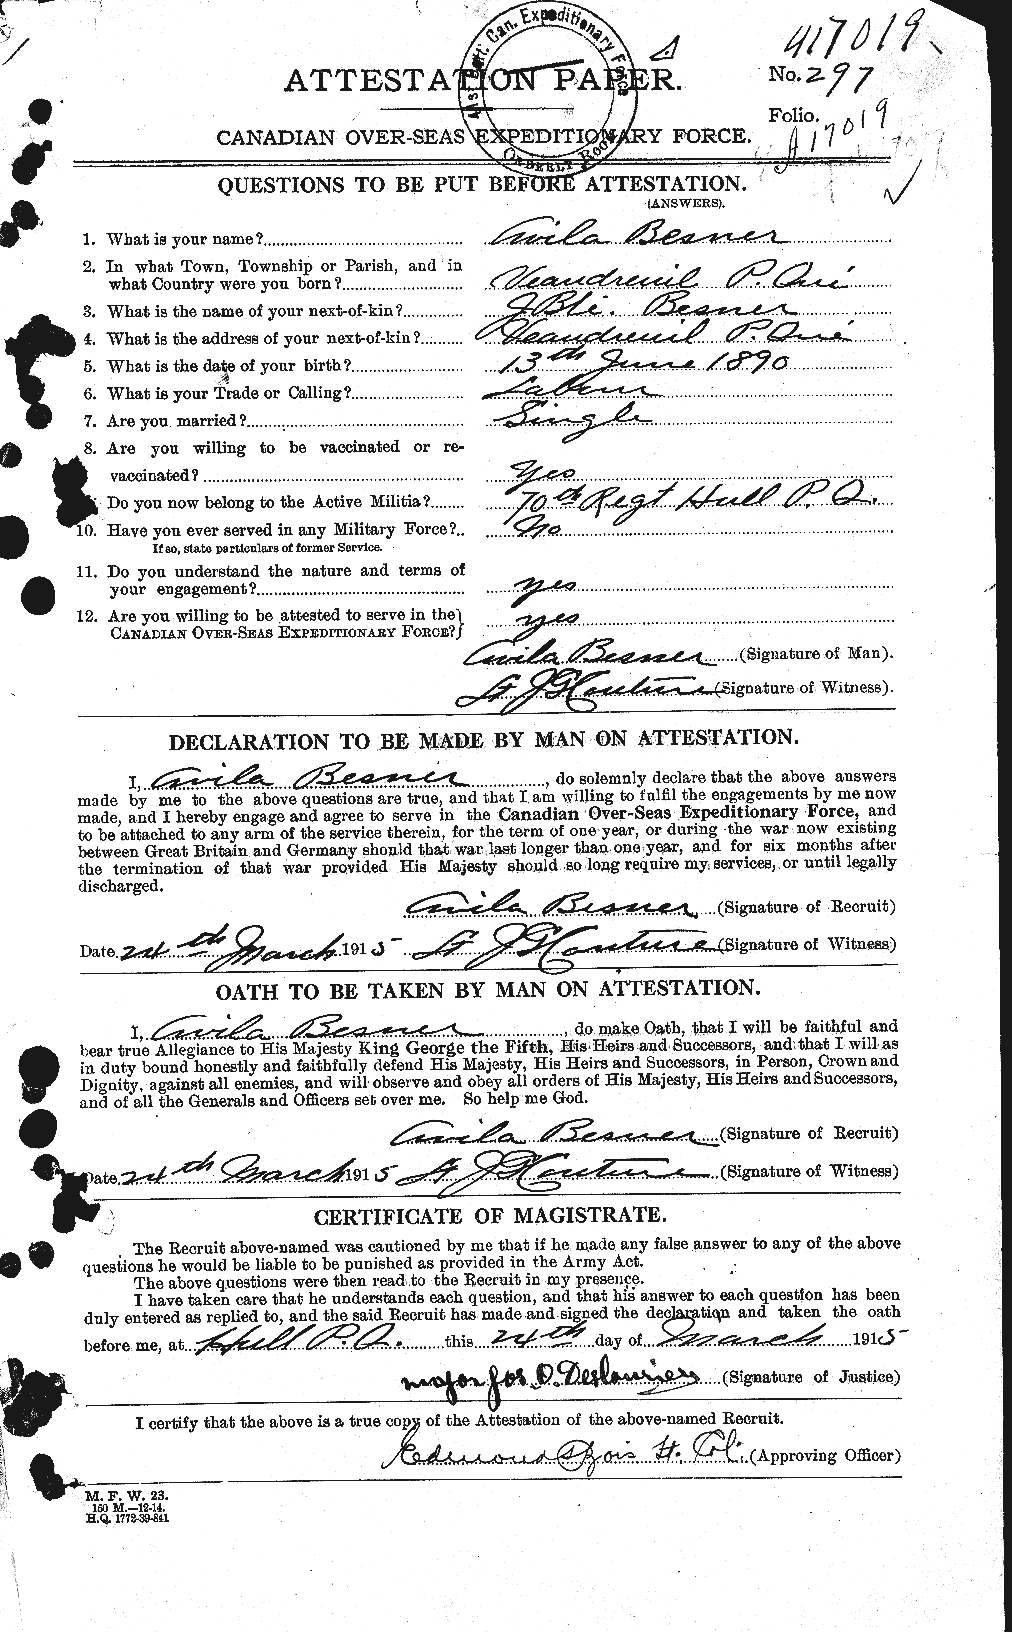 Dossiers du Personnel de la Première Guerre mondiale - CEC 240128a